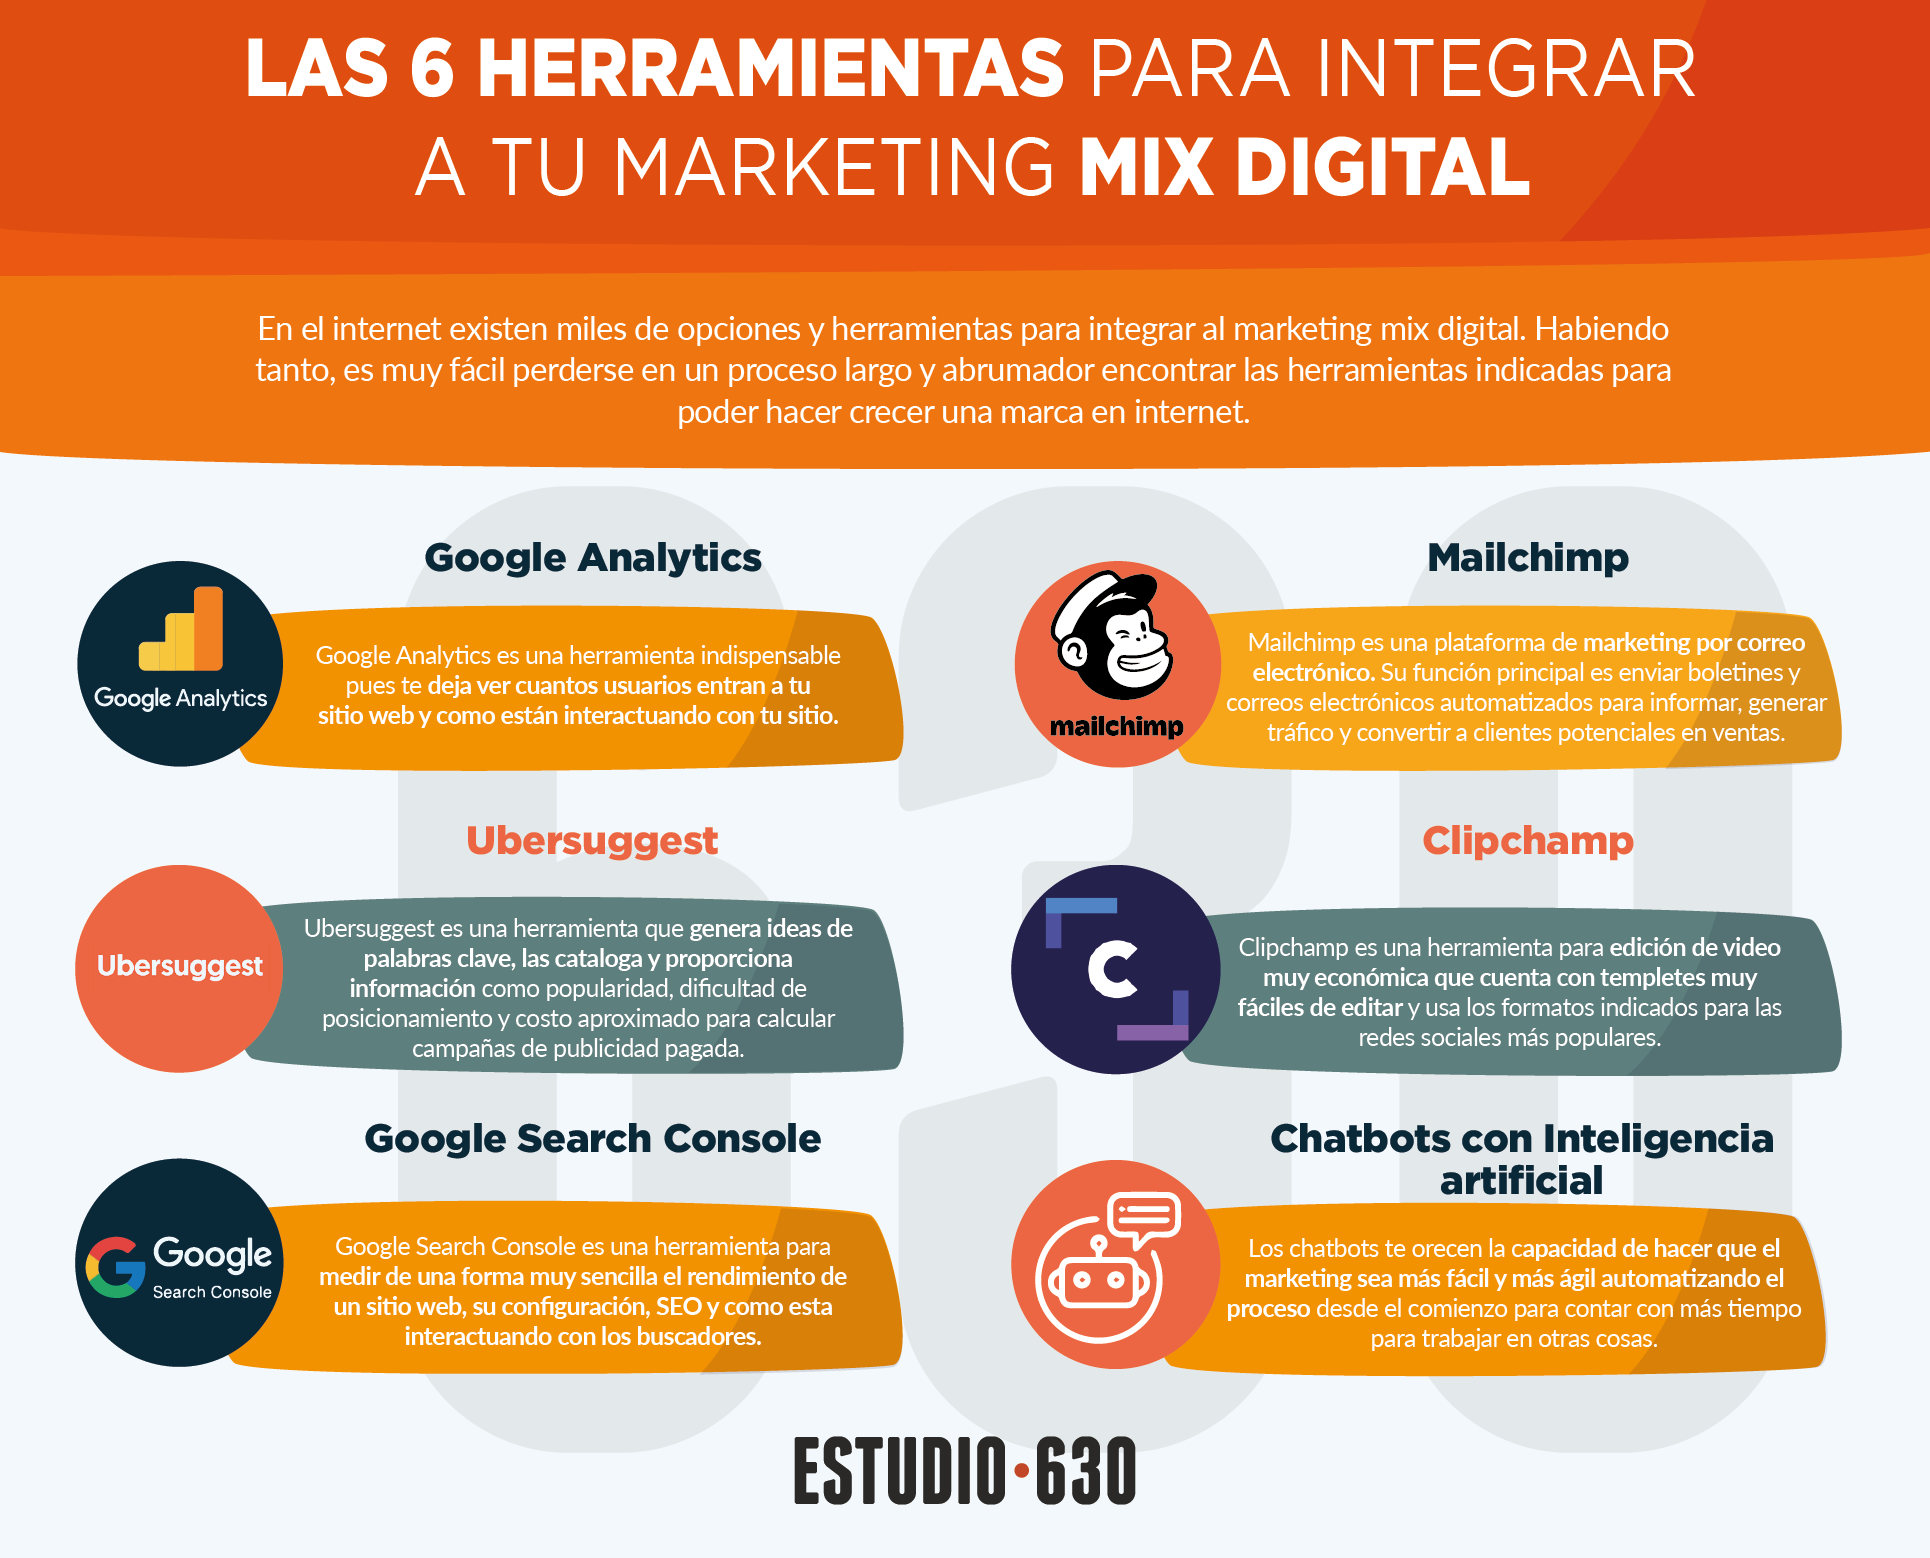 marketing mix - las 6 herramientas para integrar a tu marketing mix digital Mesa de trabajo 1 - Las 6 herramientas para integrar a tu marketing mix digital (Infografía)